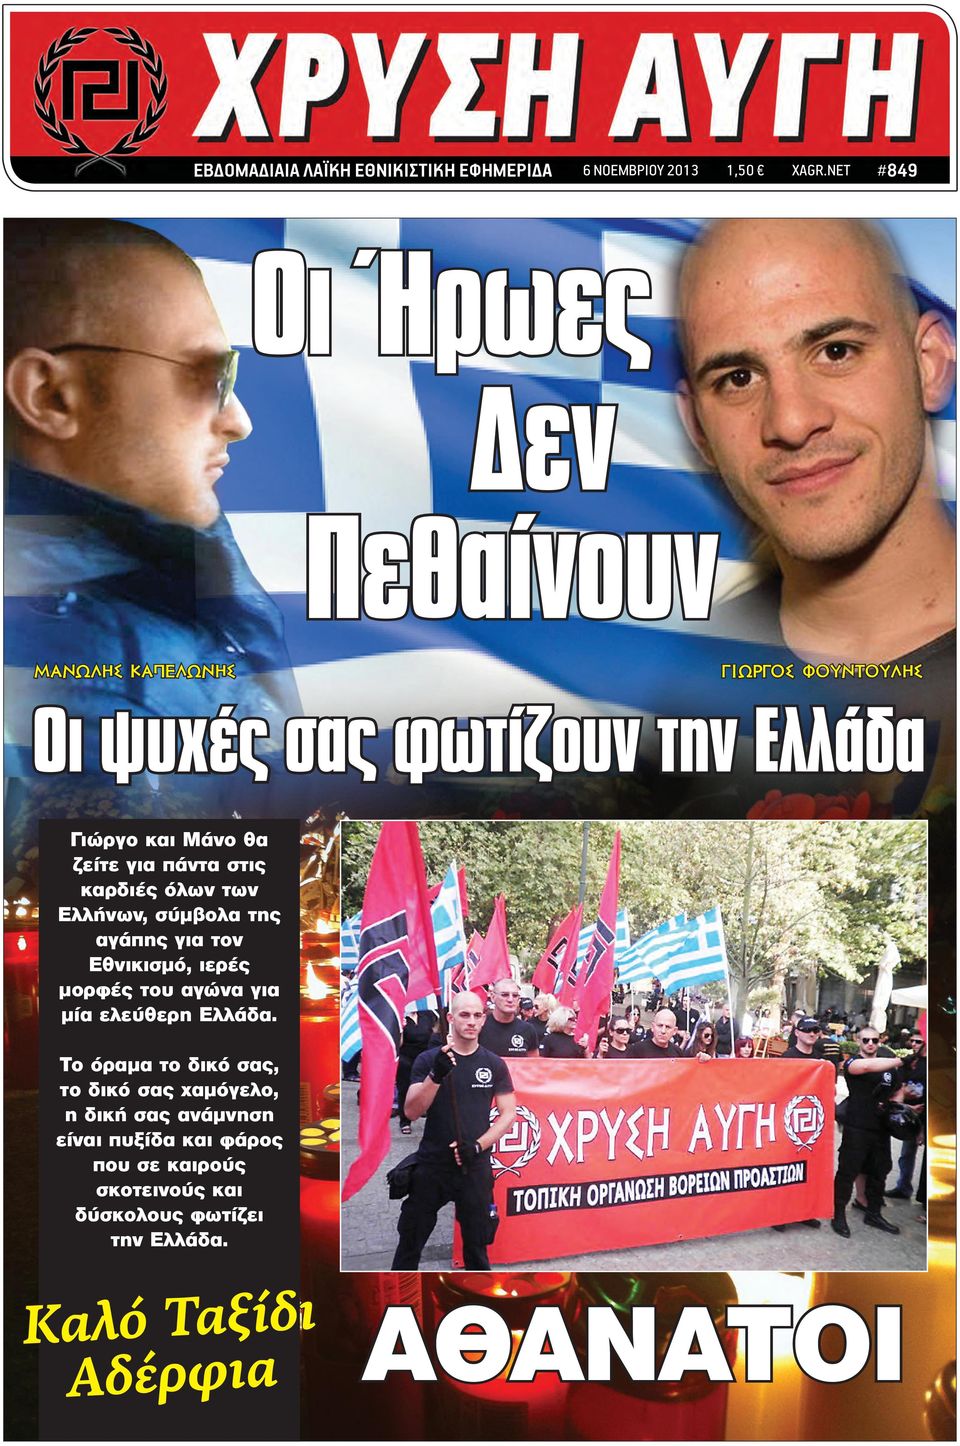 ζείτε για πάντα στις καρδιές όλων των Ελλήνων, σύμβολα της αγάπης για τον Εθνικισμό, ιερές μορφές του αγώνα για μία